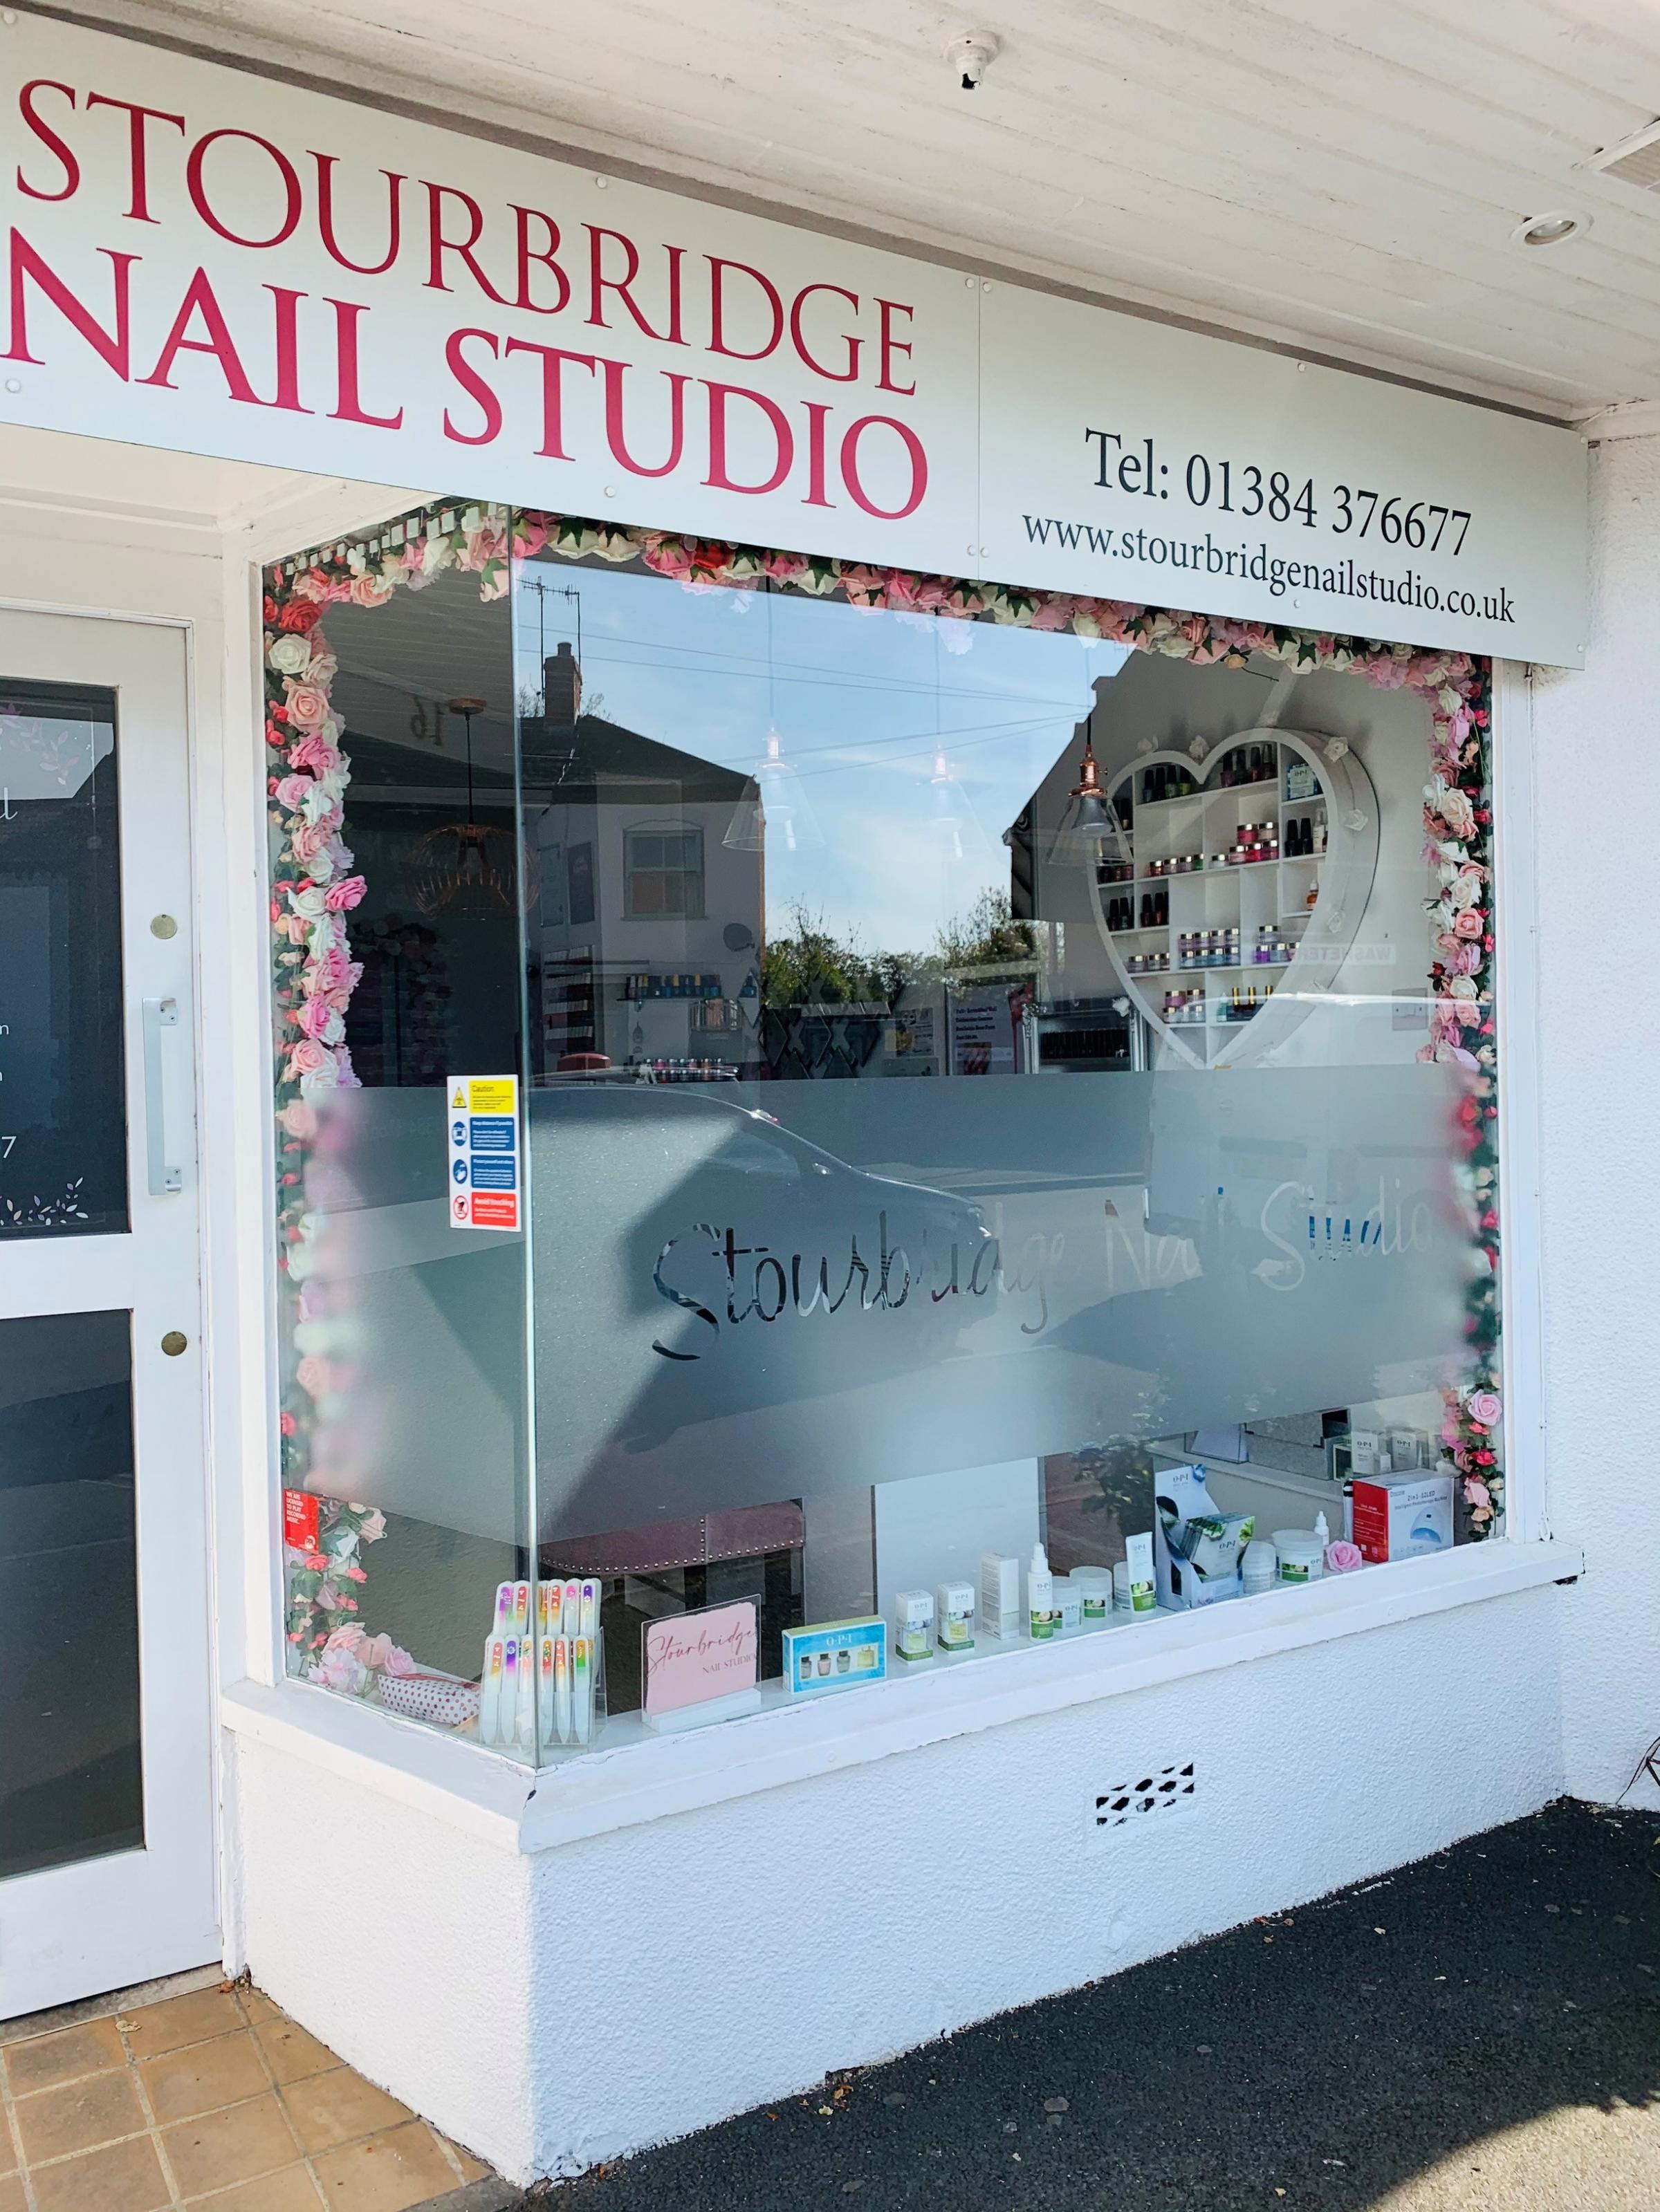 Stourbridge Nail Studio in Clifton Street